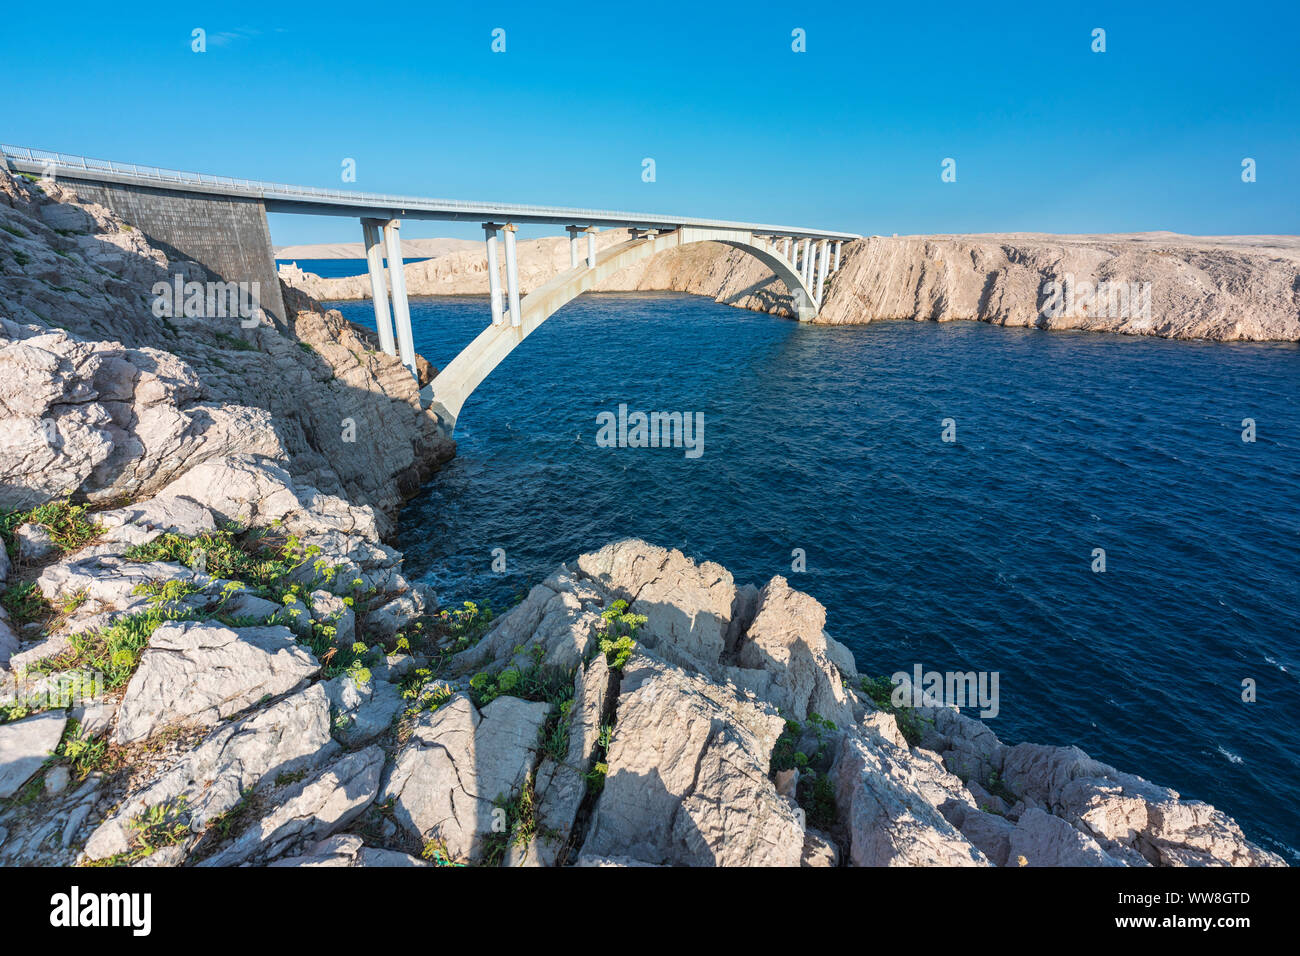 Die meisten Brücke und Fördermodule, dass Kroatien Festland und Insel Pag, Zara, Gespanschaft Zadar, Dalmatien, Kroatien verbindet Stockfoto